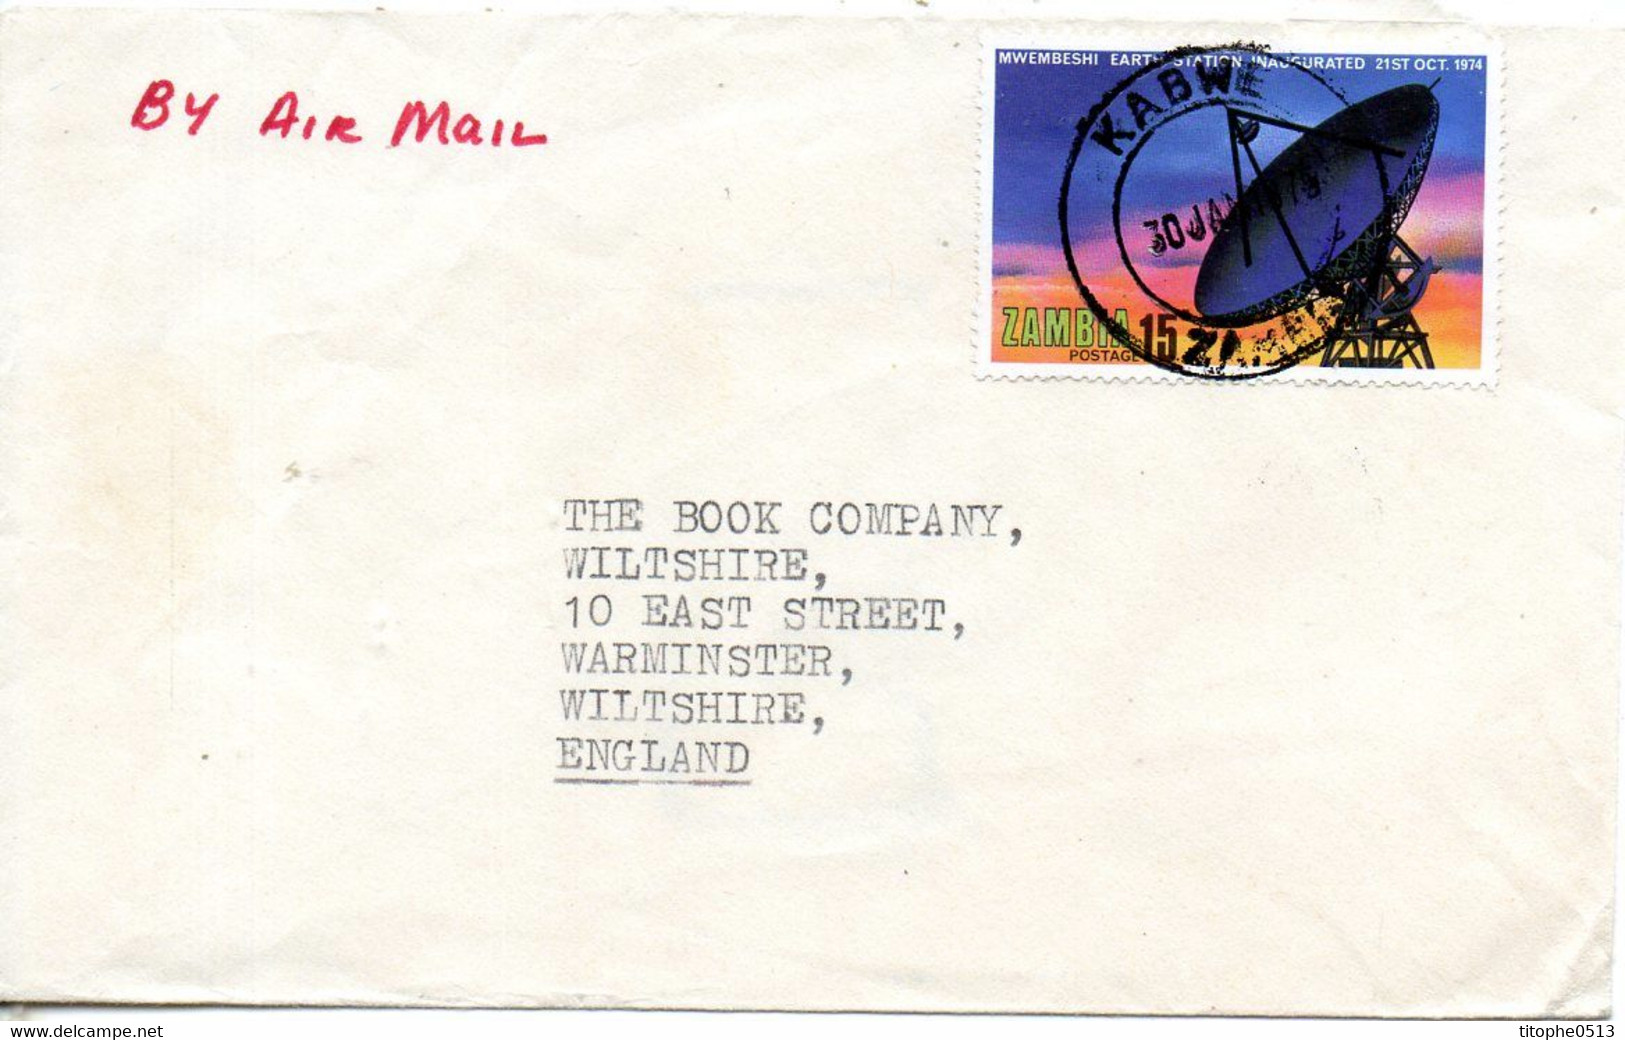 ZAMBIE. N°131 De 1974 Sur Enveloppe Ayant Circulé. Station De Communications Spatiales. - Afrique